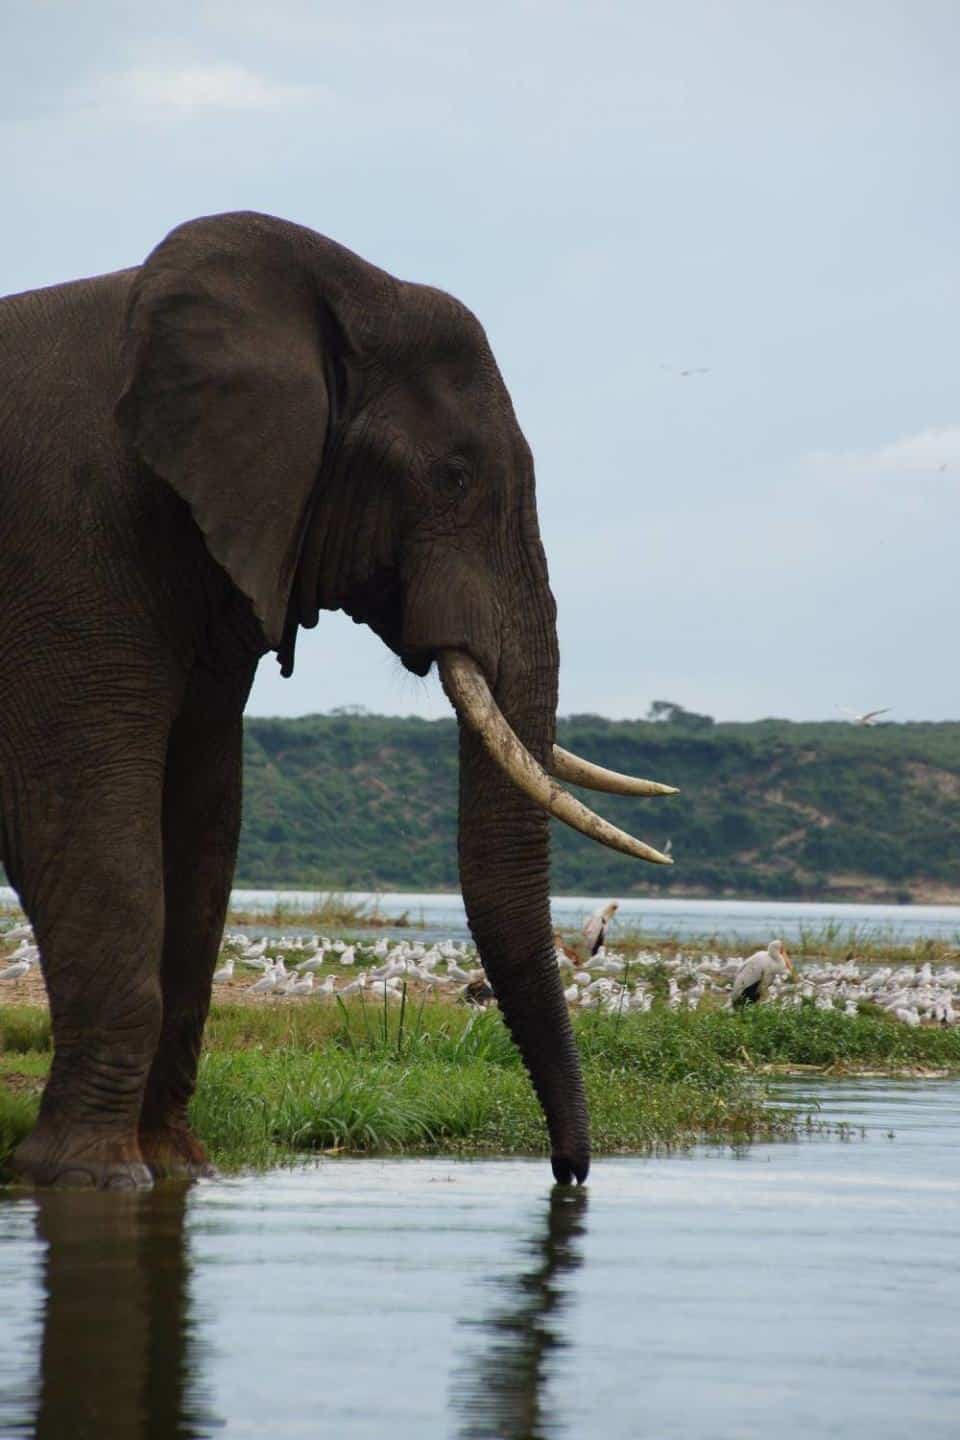 An elephant at the Kazinga Channel